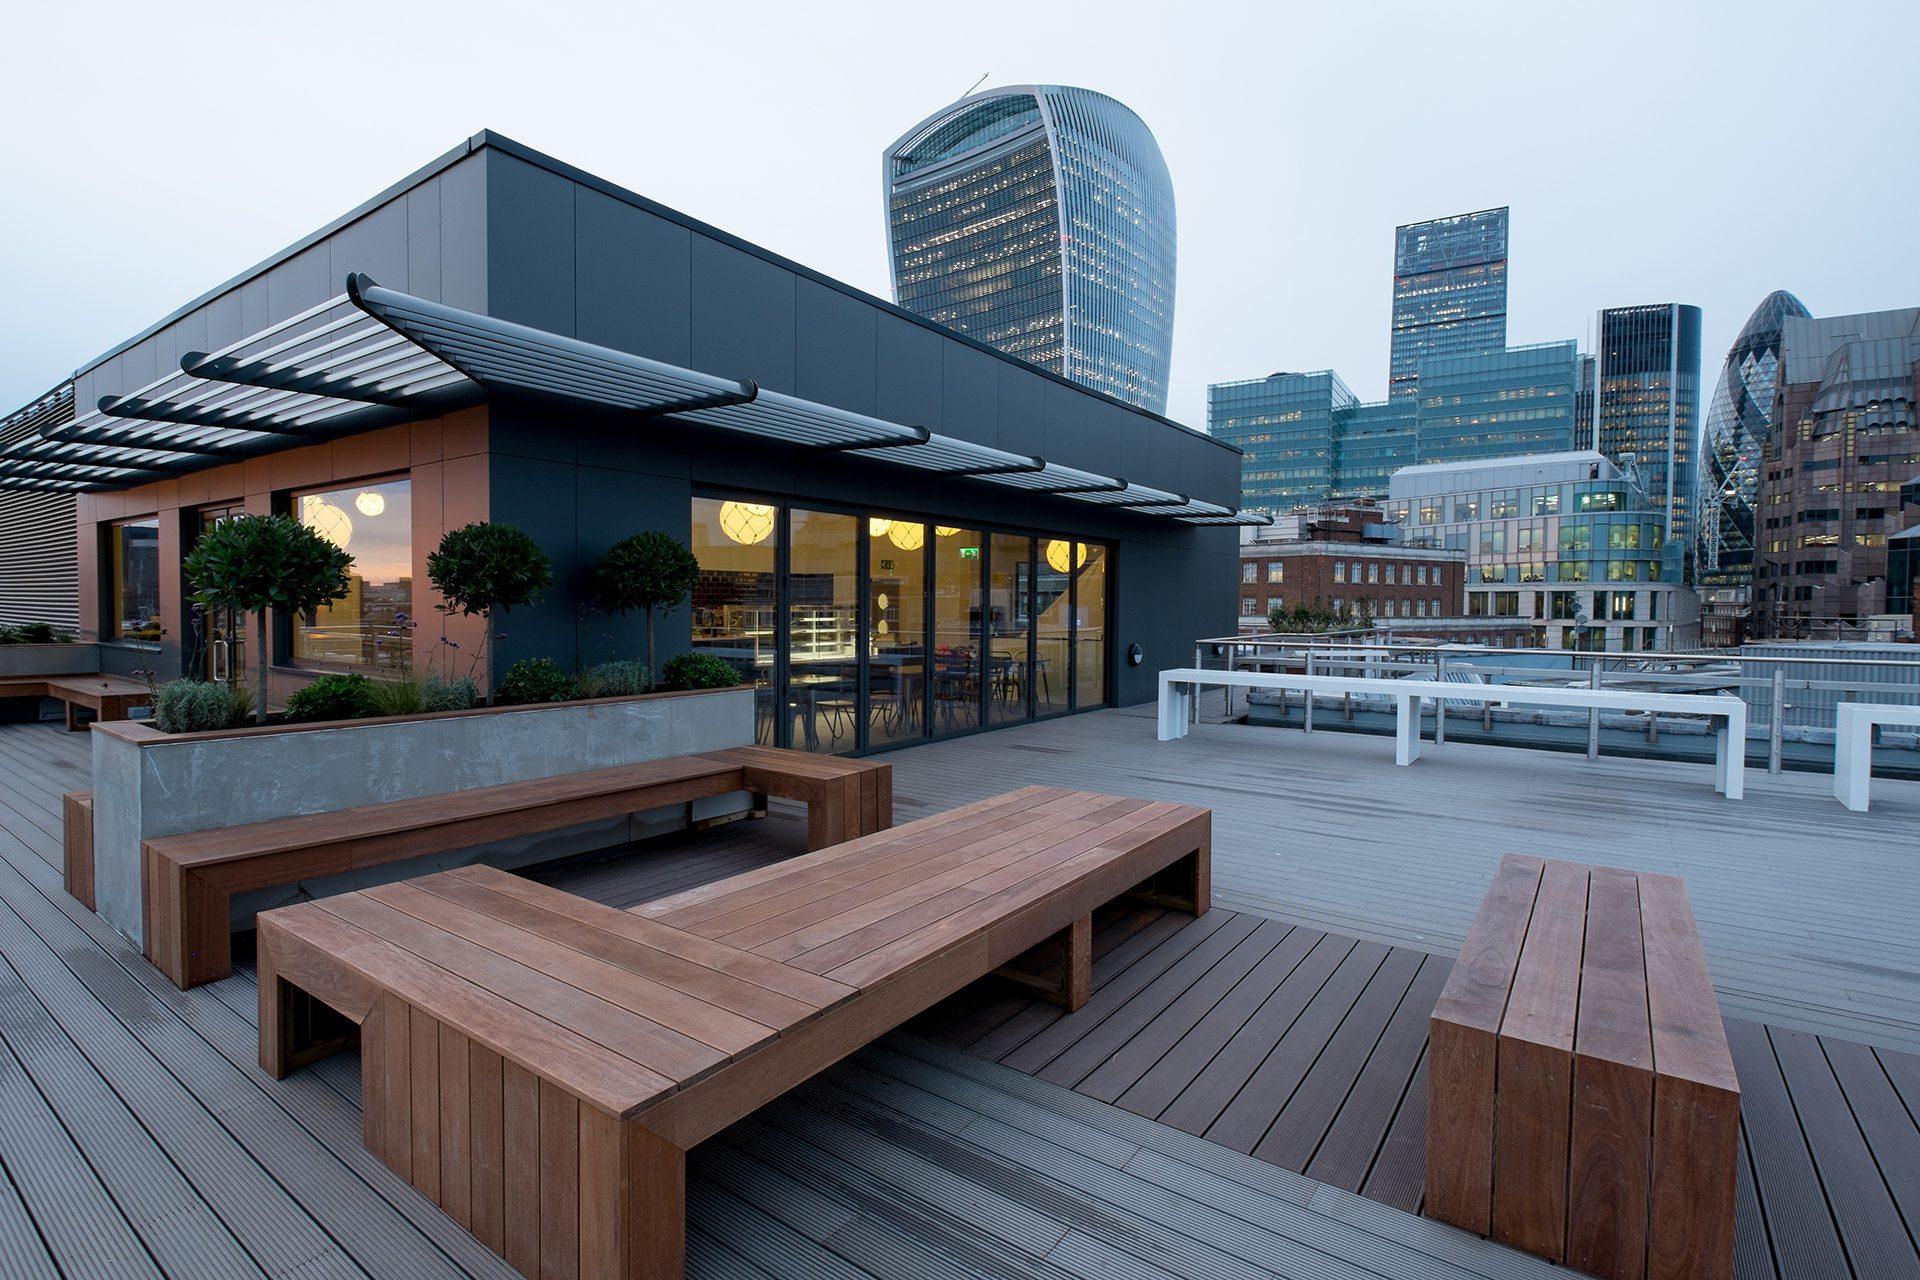 Roof café renovation by Peldon Rose